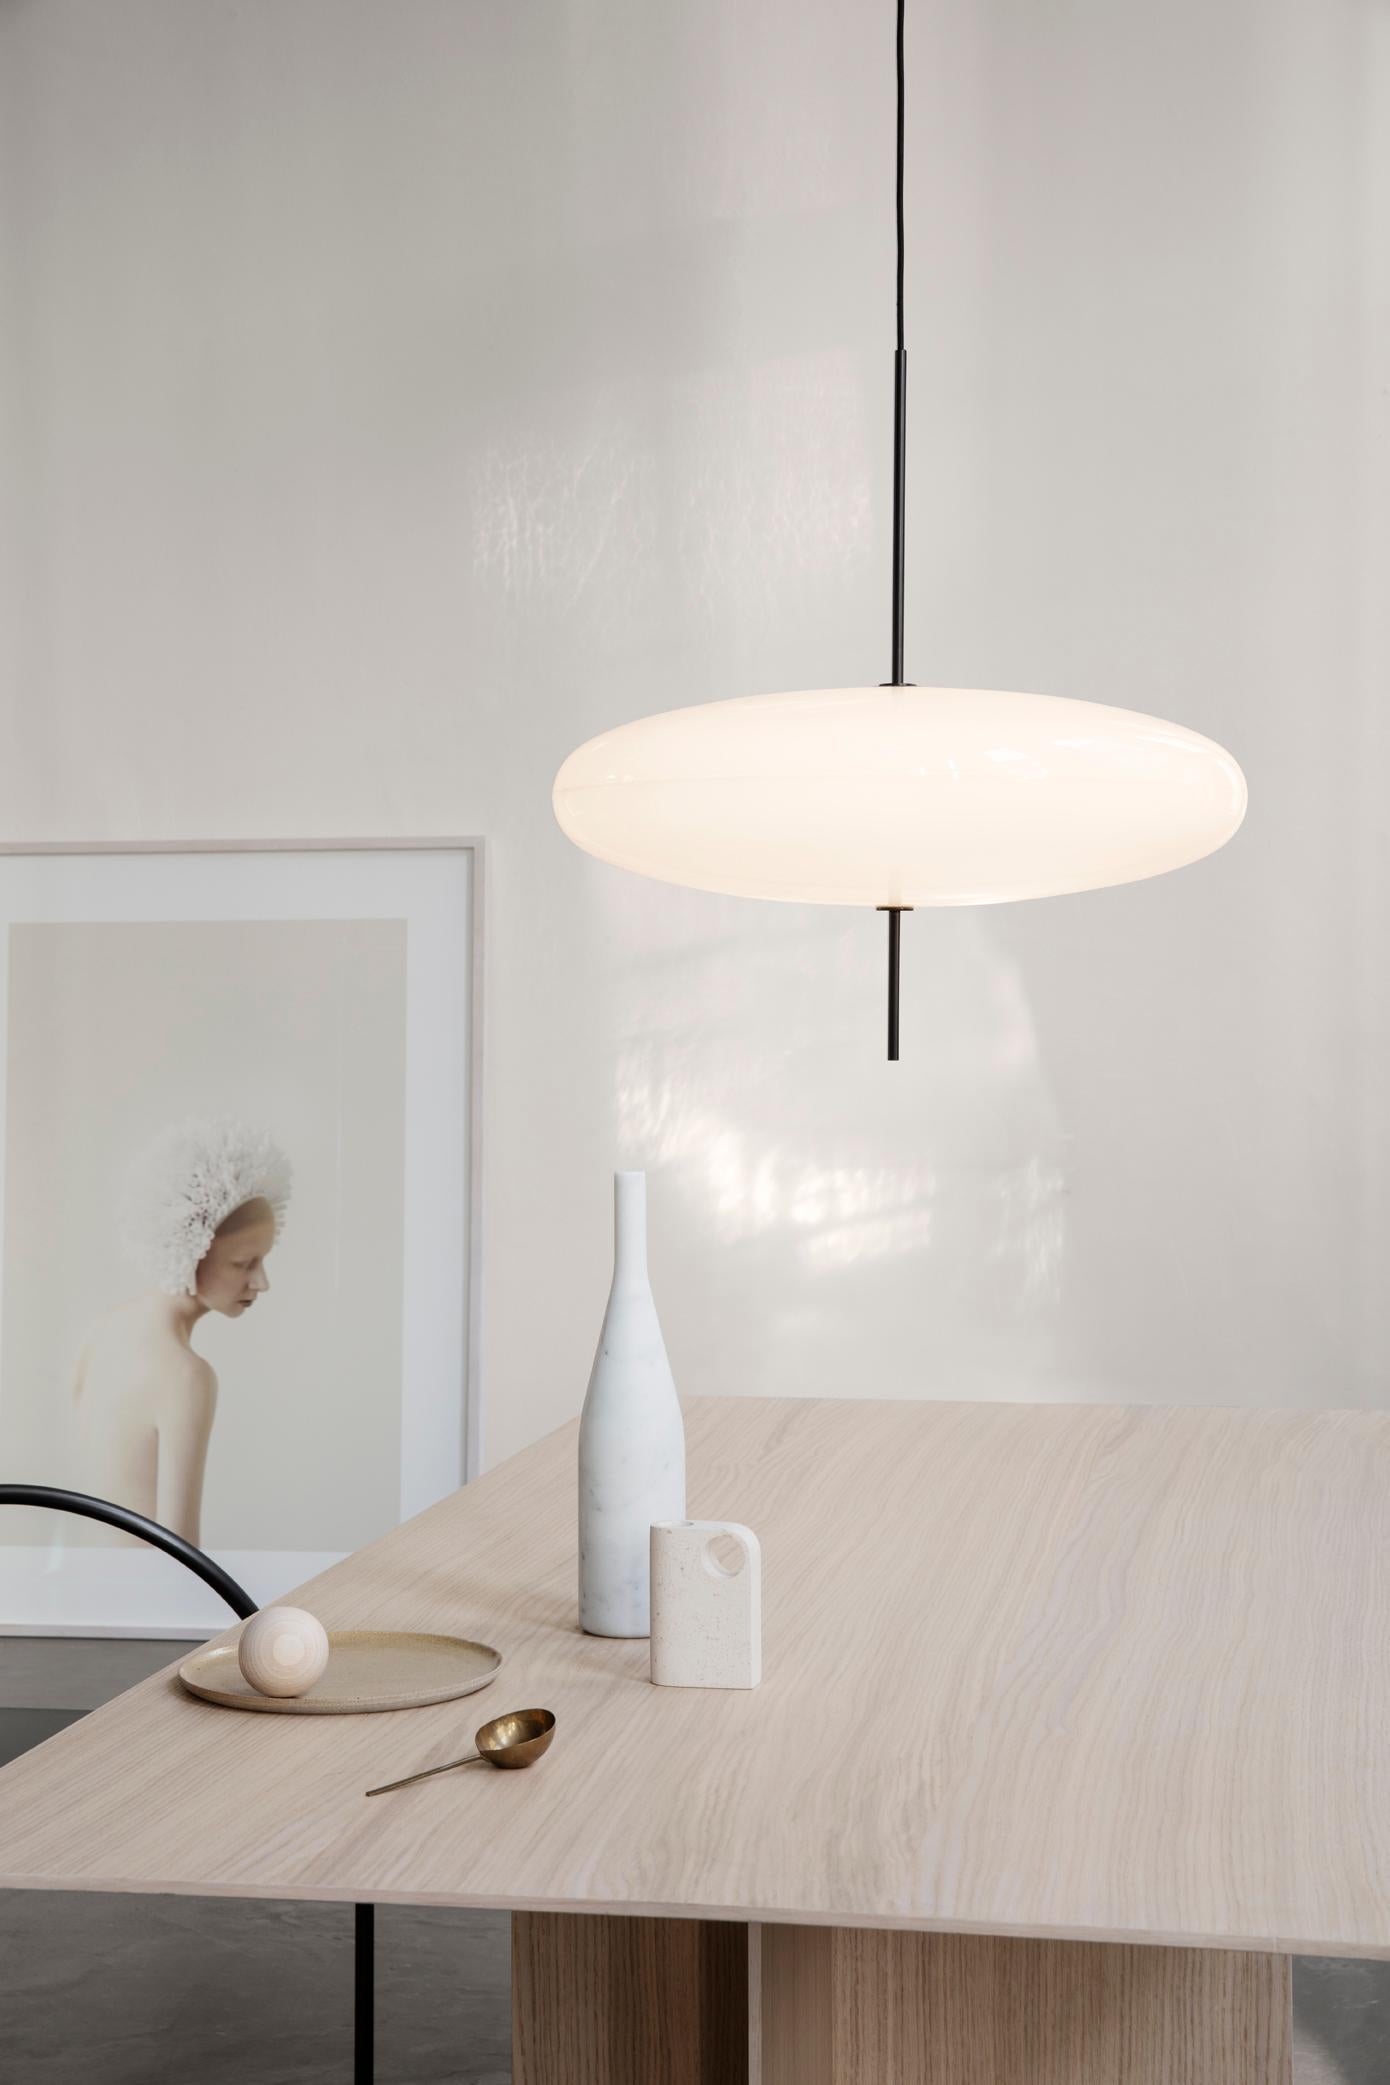 Gino Sarfatti Lamp Model 2065 White Diffuser, Black Hardware, Black Cable 2